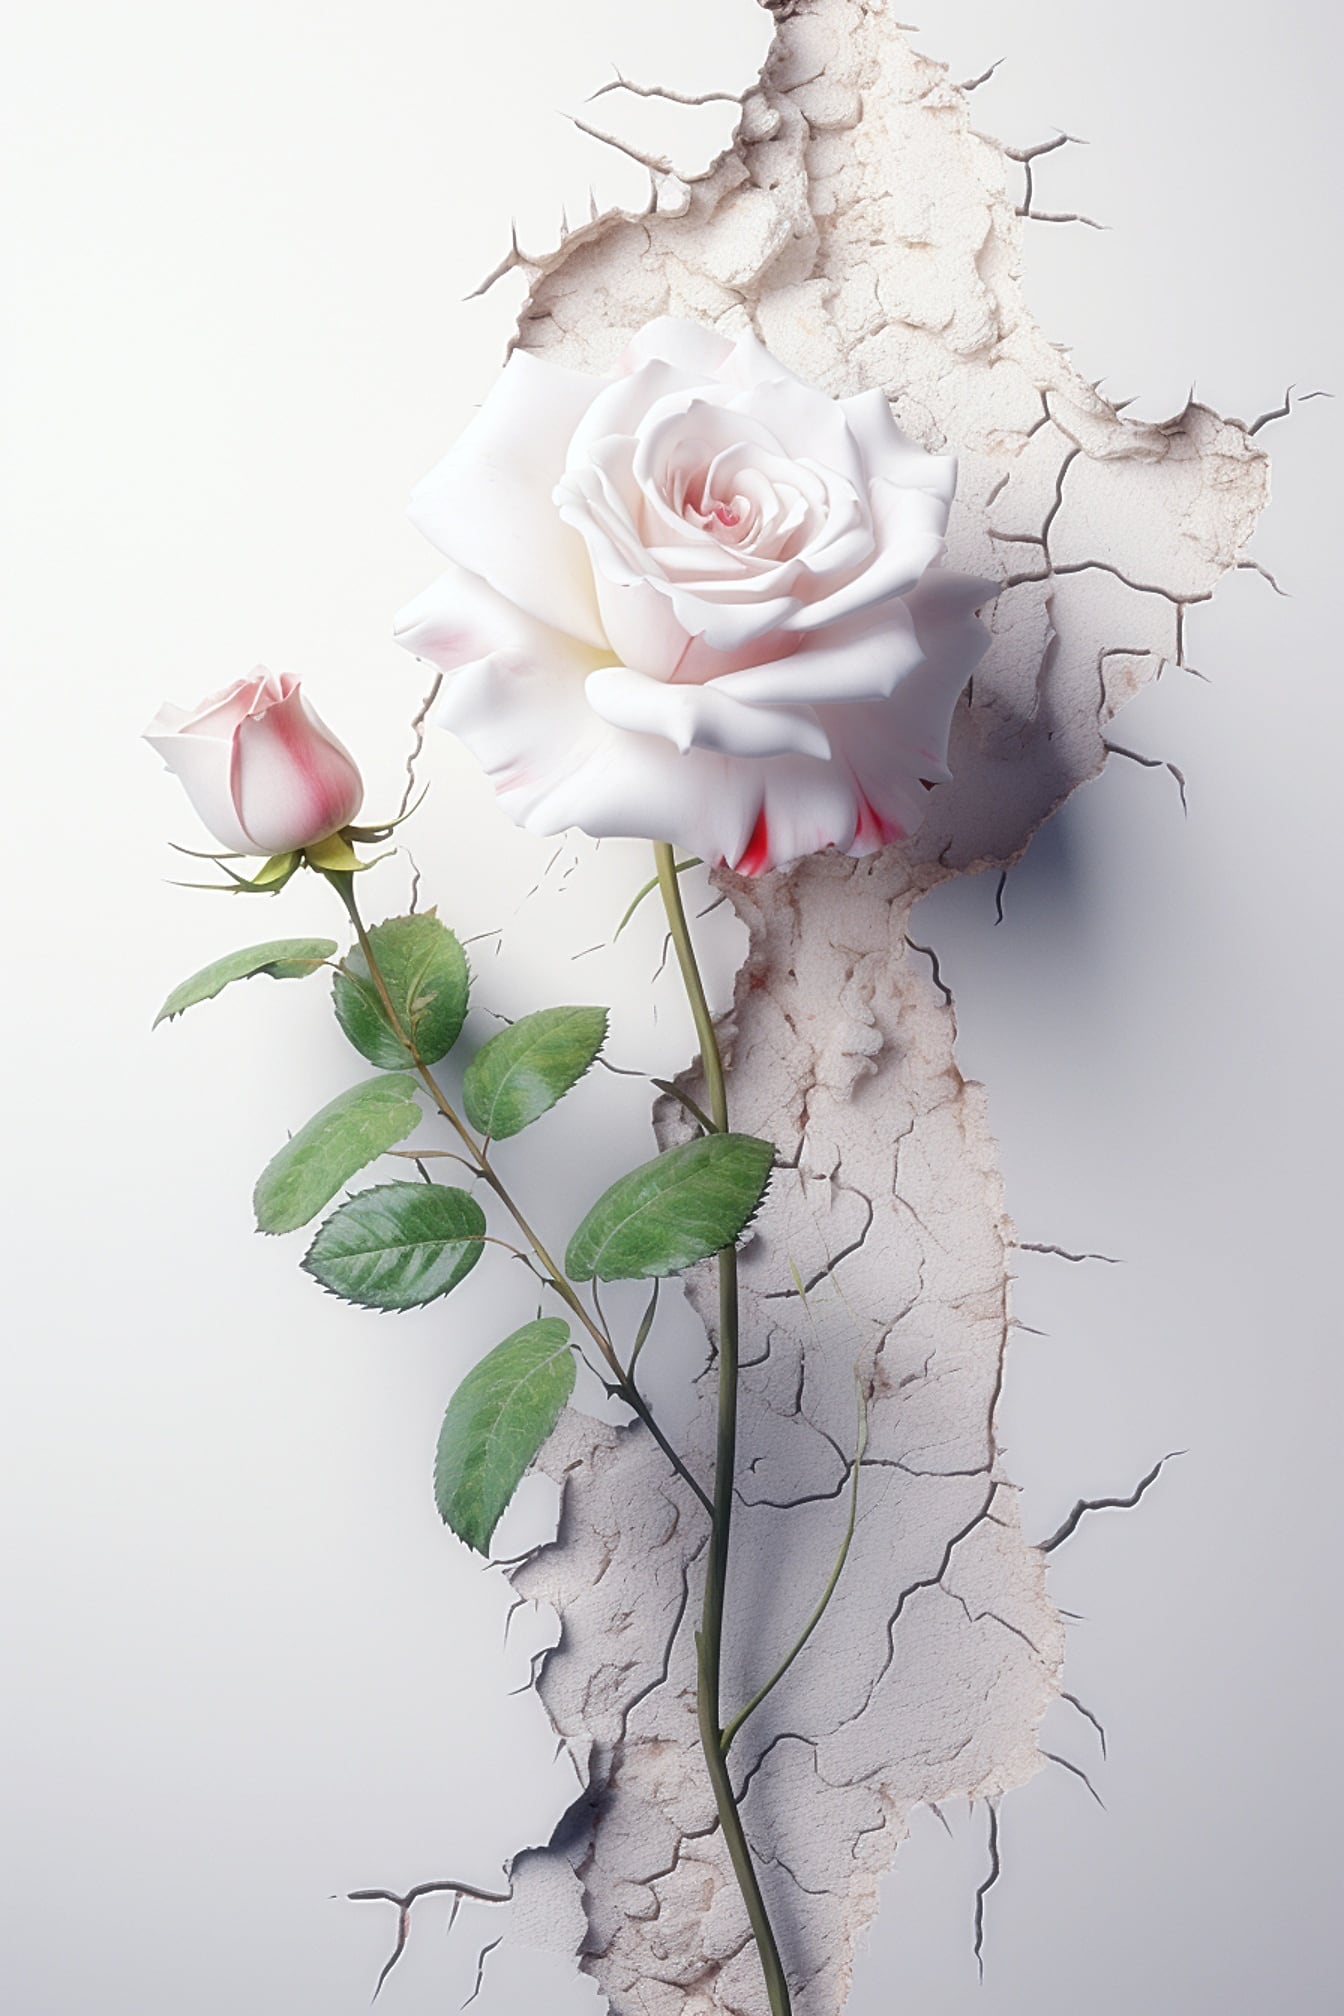 Rosa bianca con foglie verdi e una rosa rosata su un muro screpolato